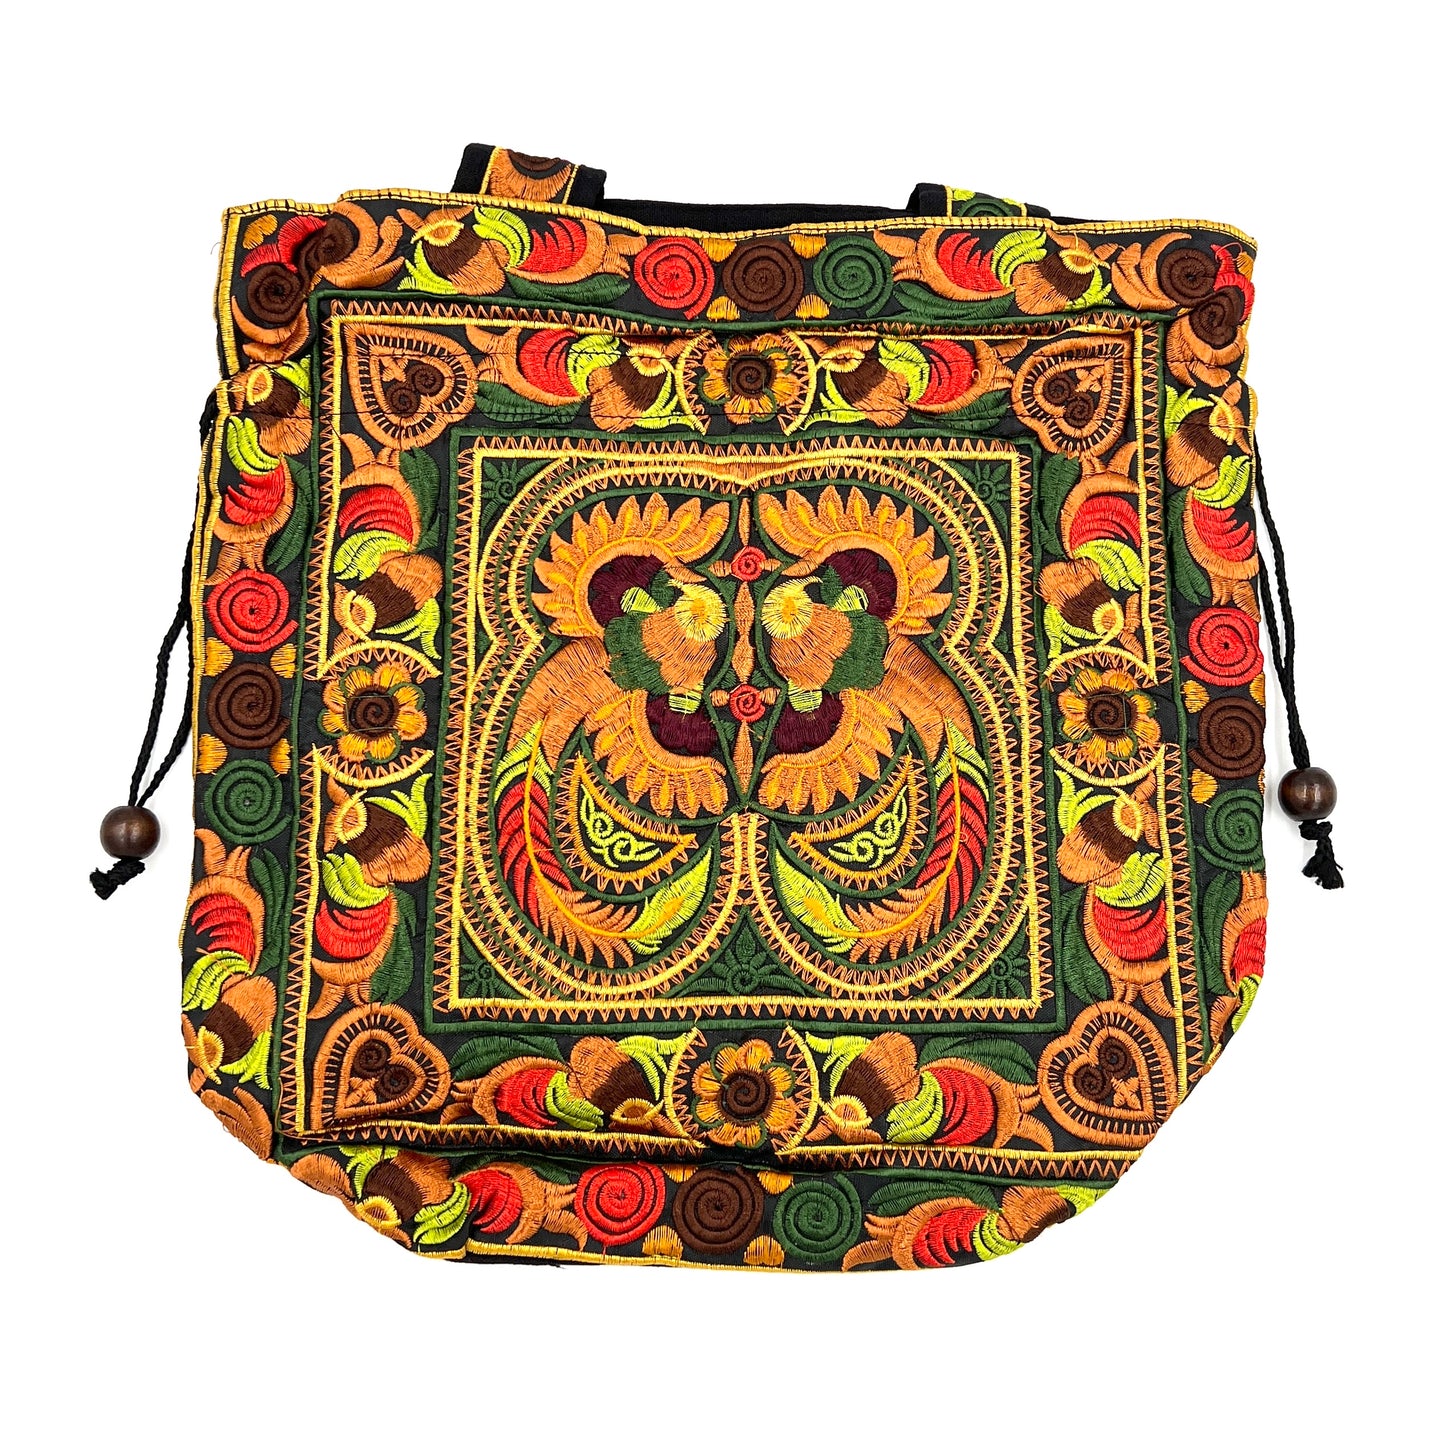 Embroidered Bird Handbags